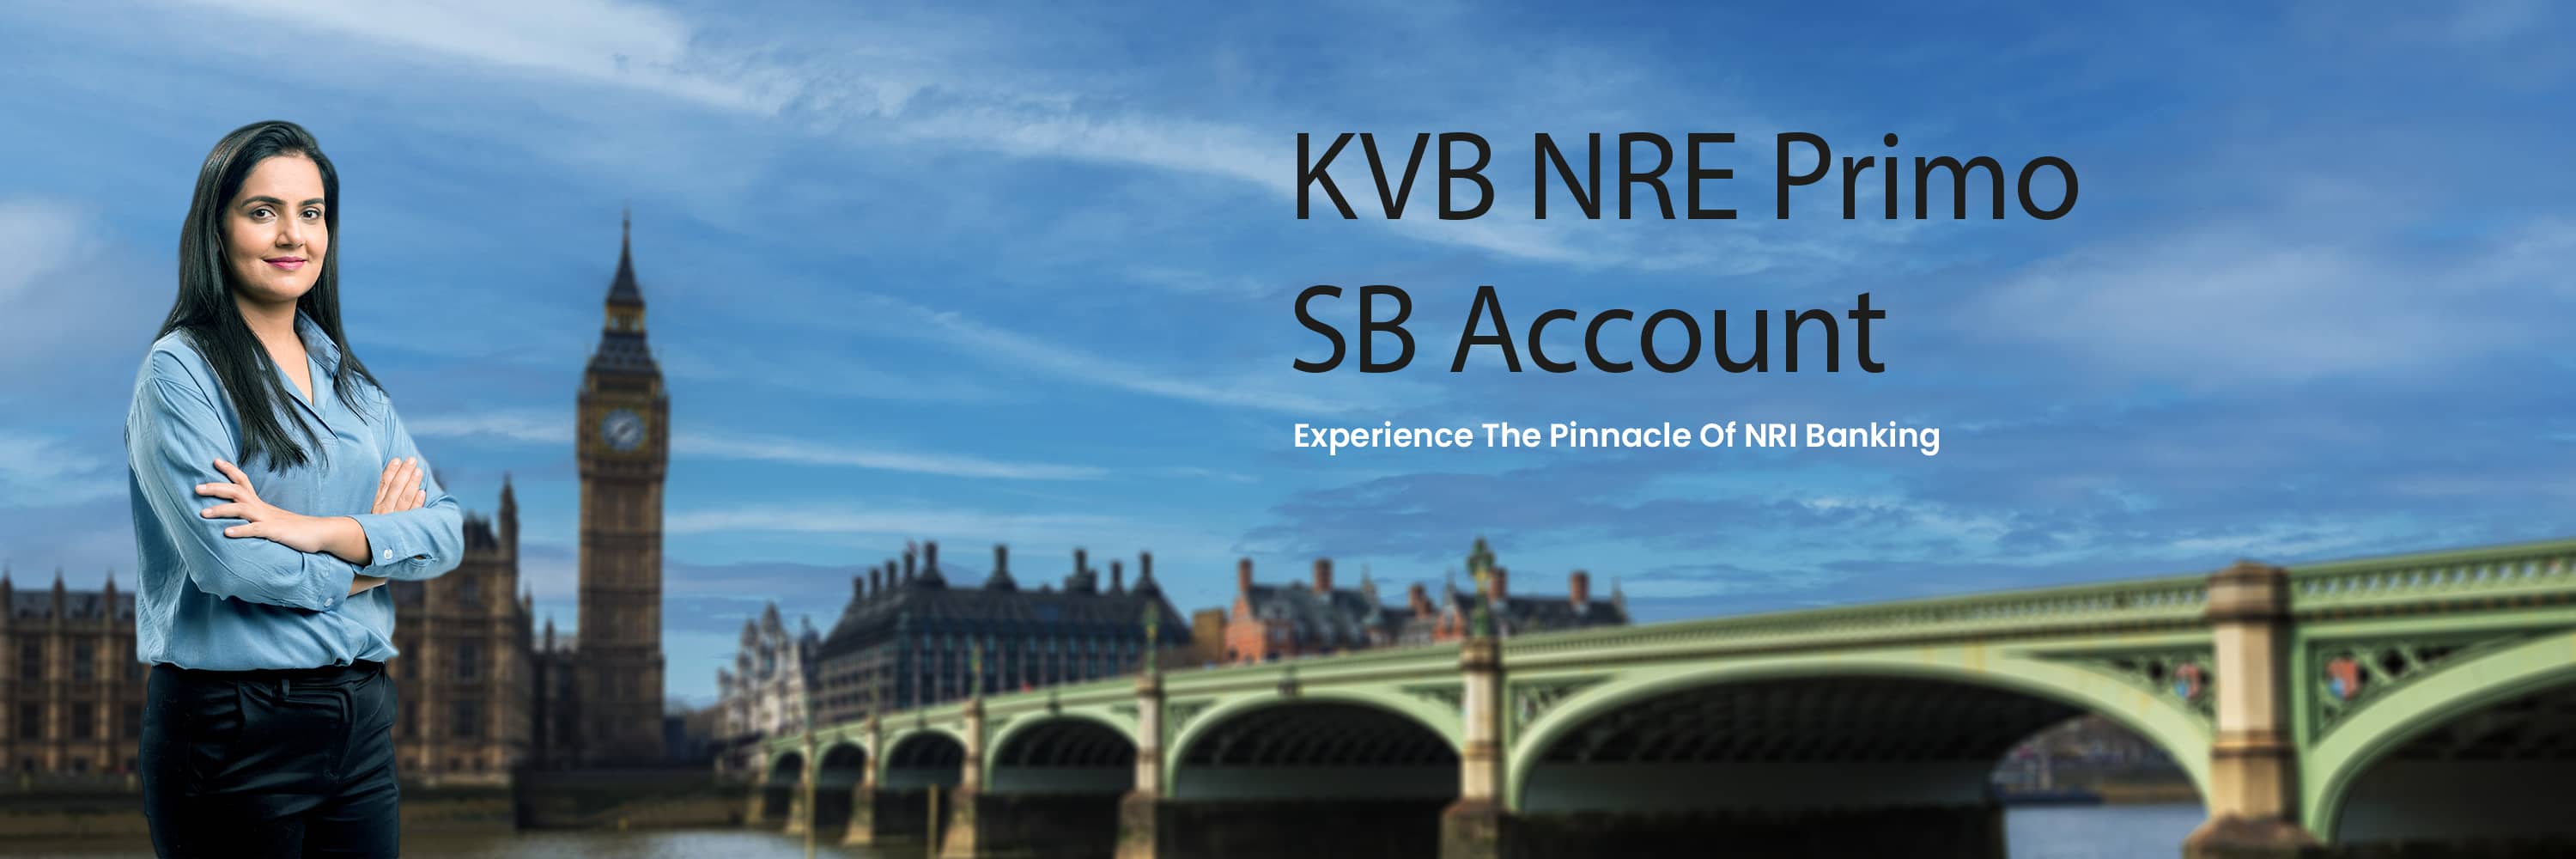 KVB Royal sb Account